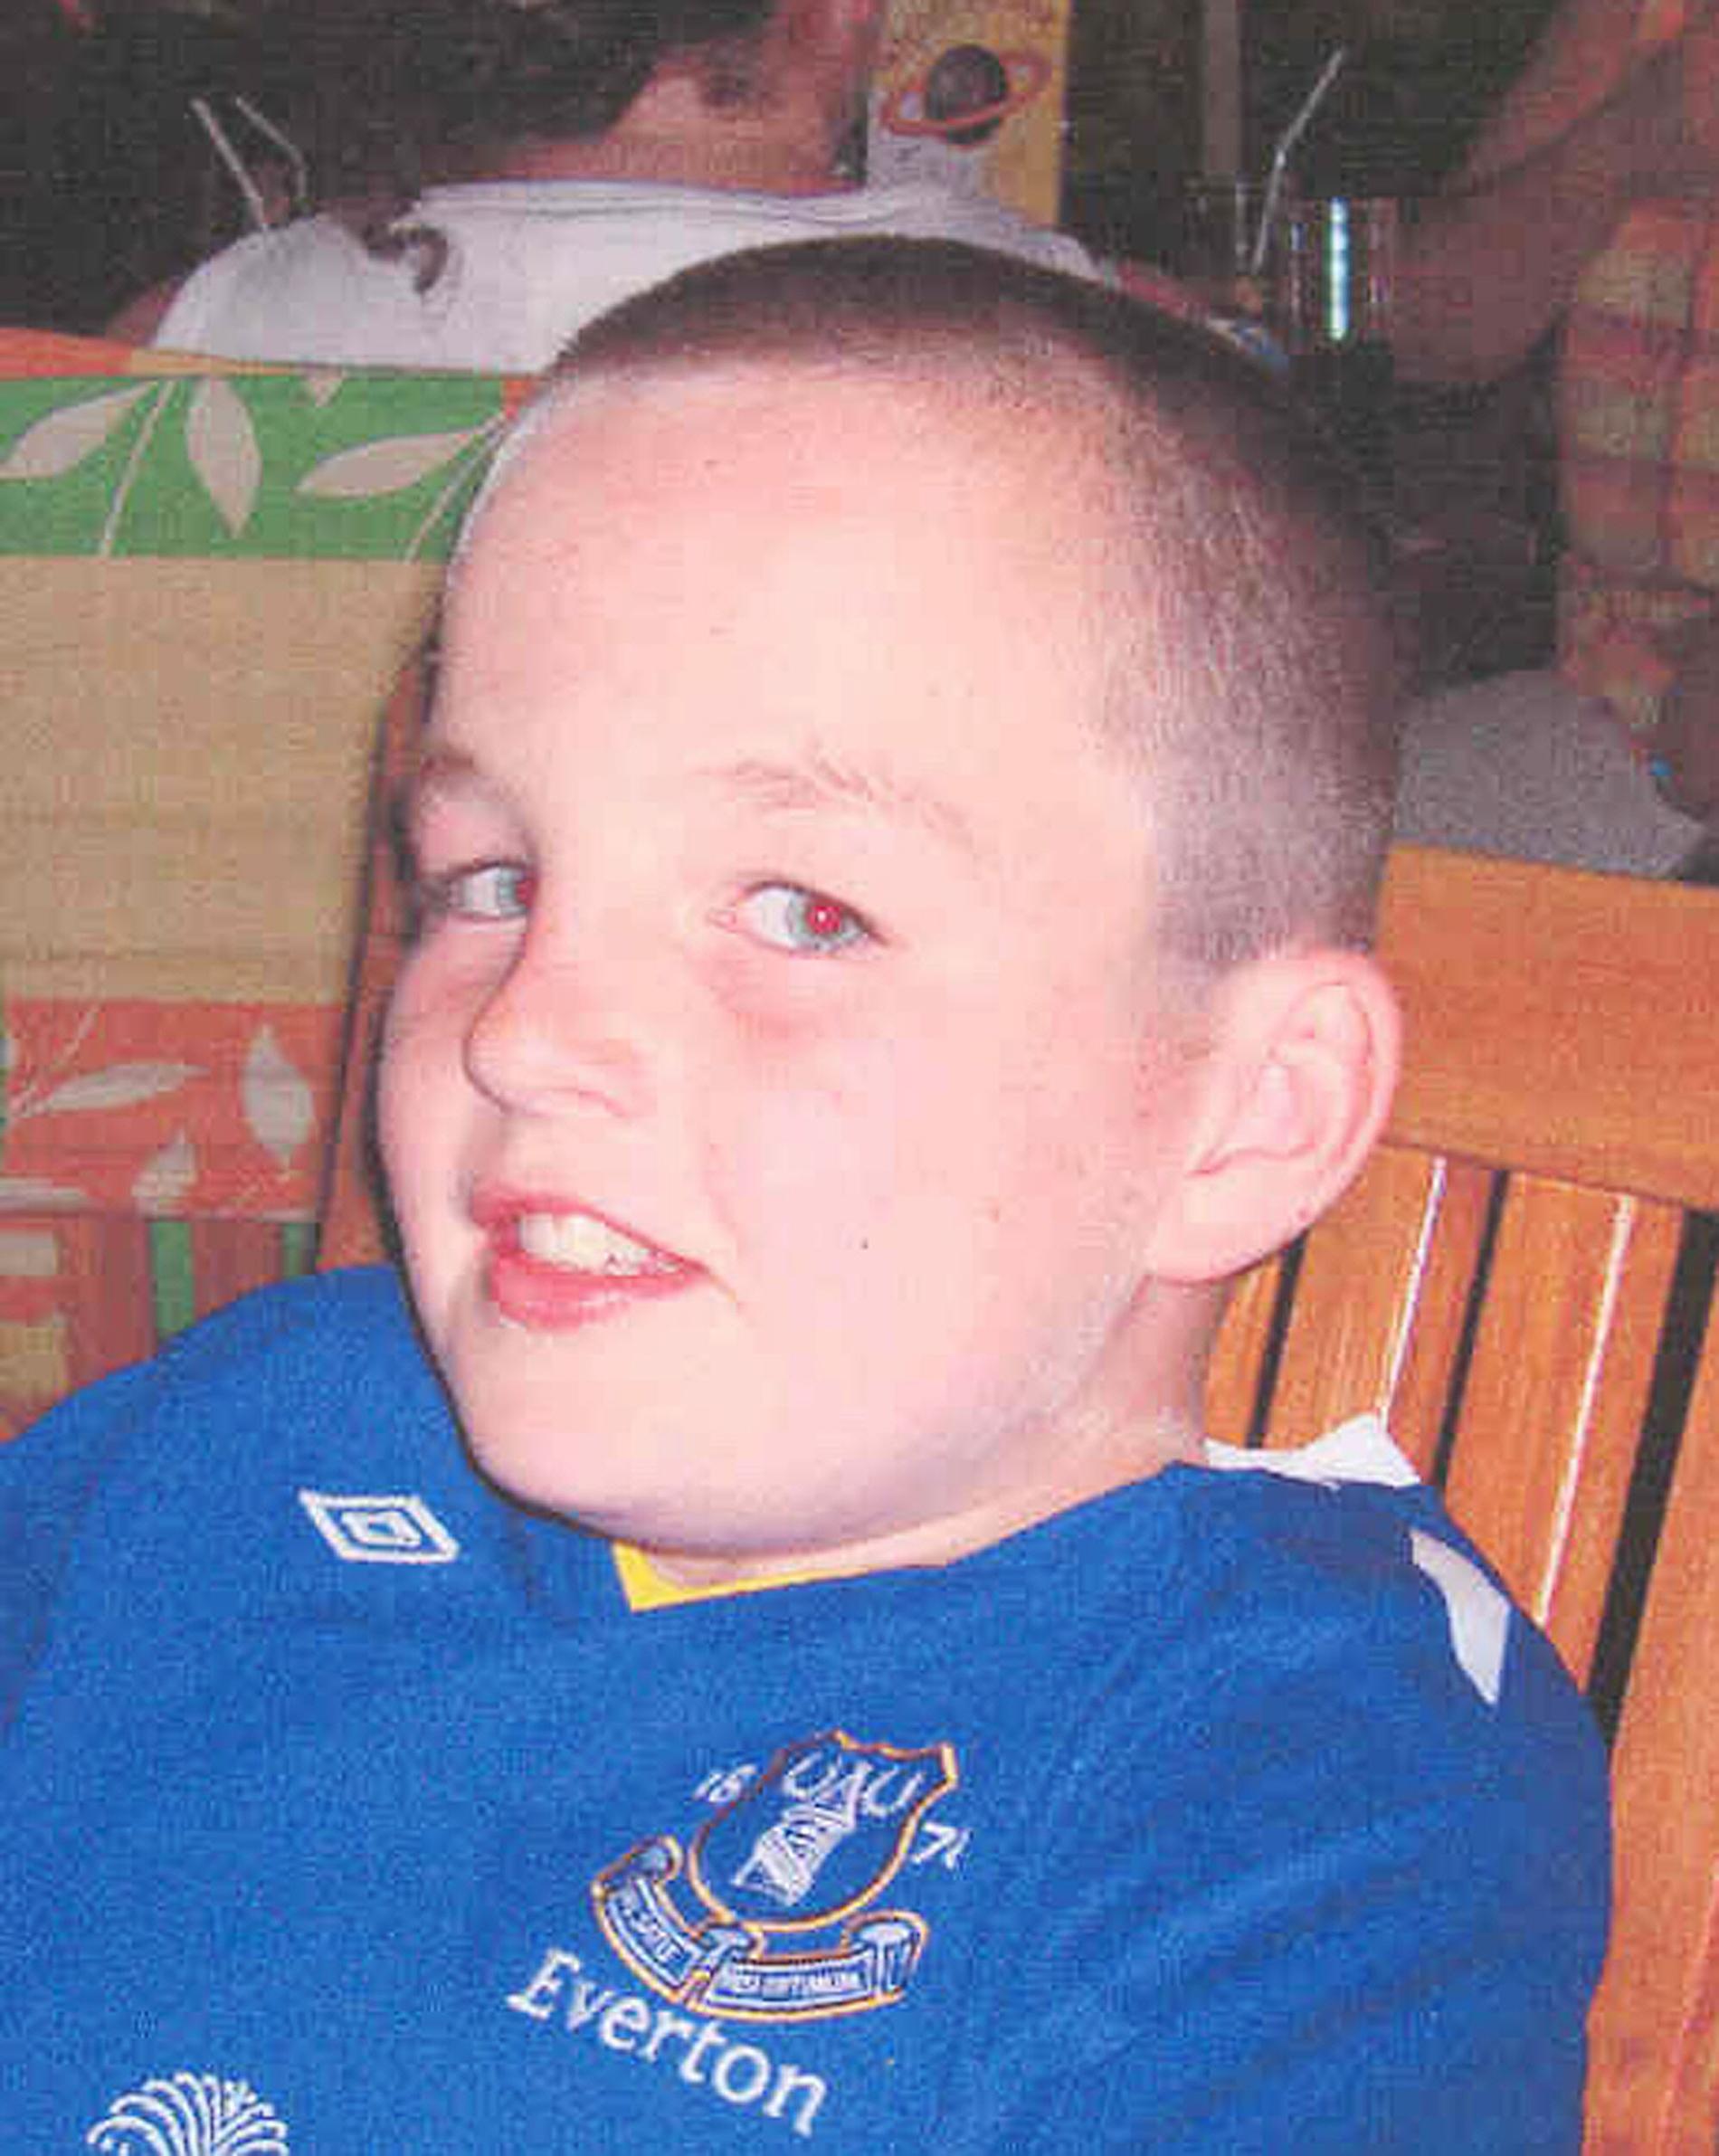 Rhys Jones, 11, sköts till döds i Liverpool när han spelade fotboll.